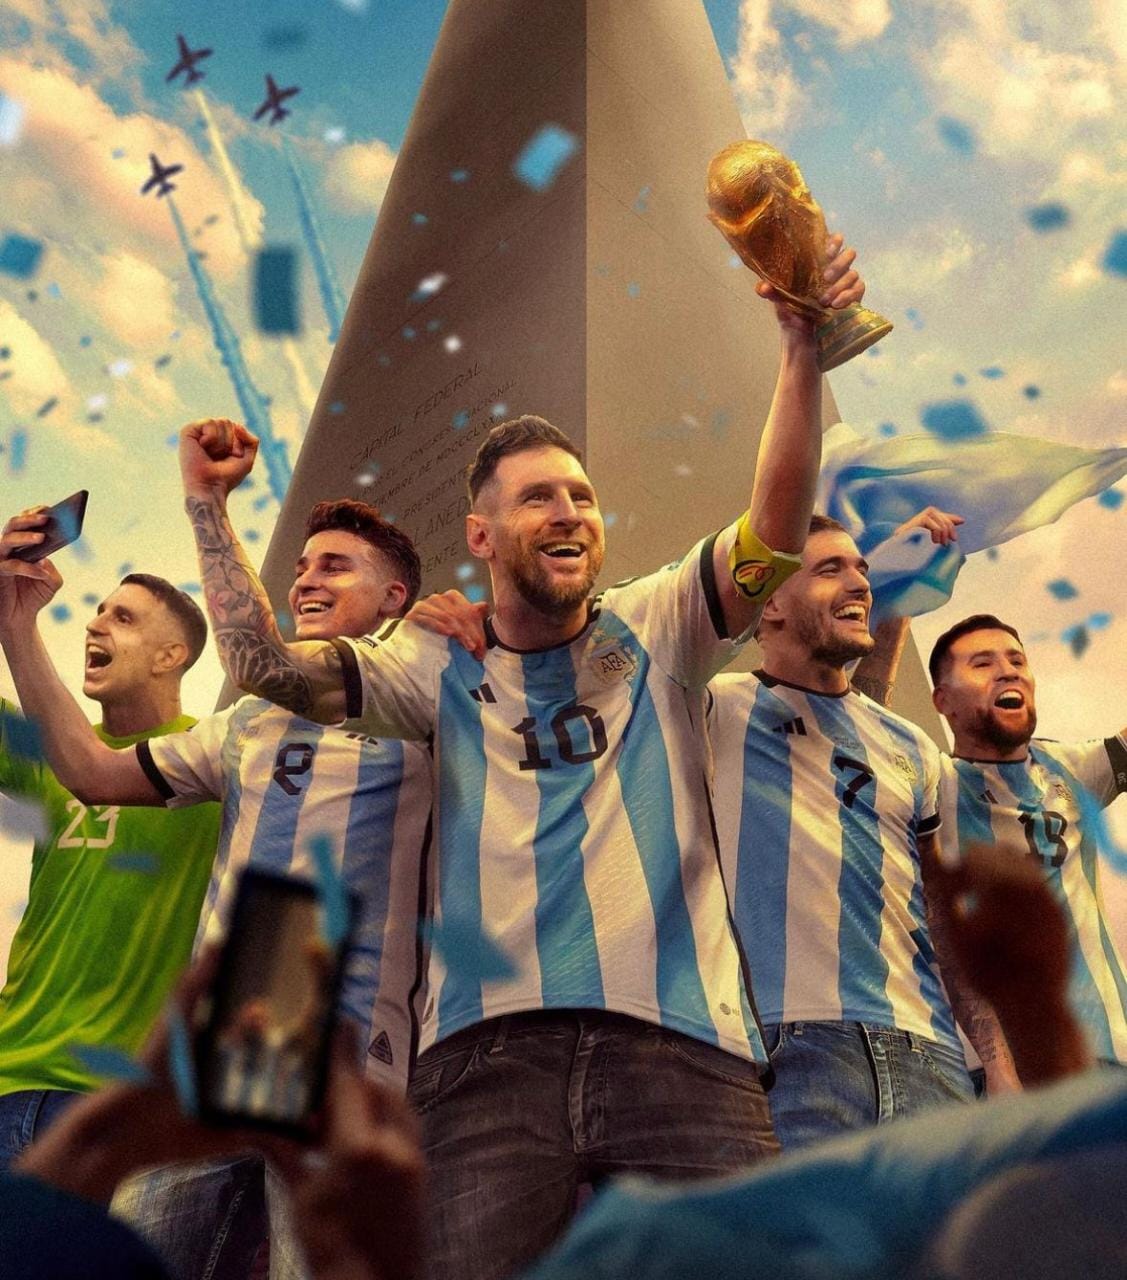 Argentina fatura o tri mundial diante da França e coroa um genial